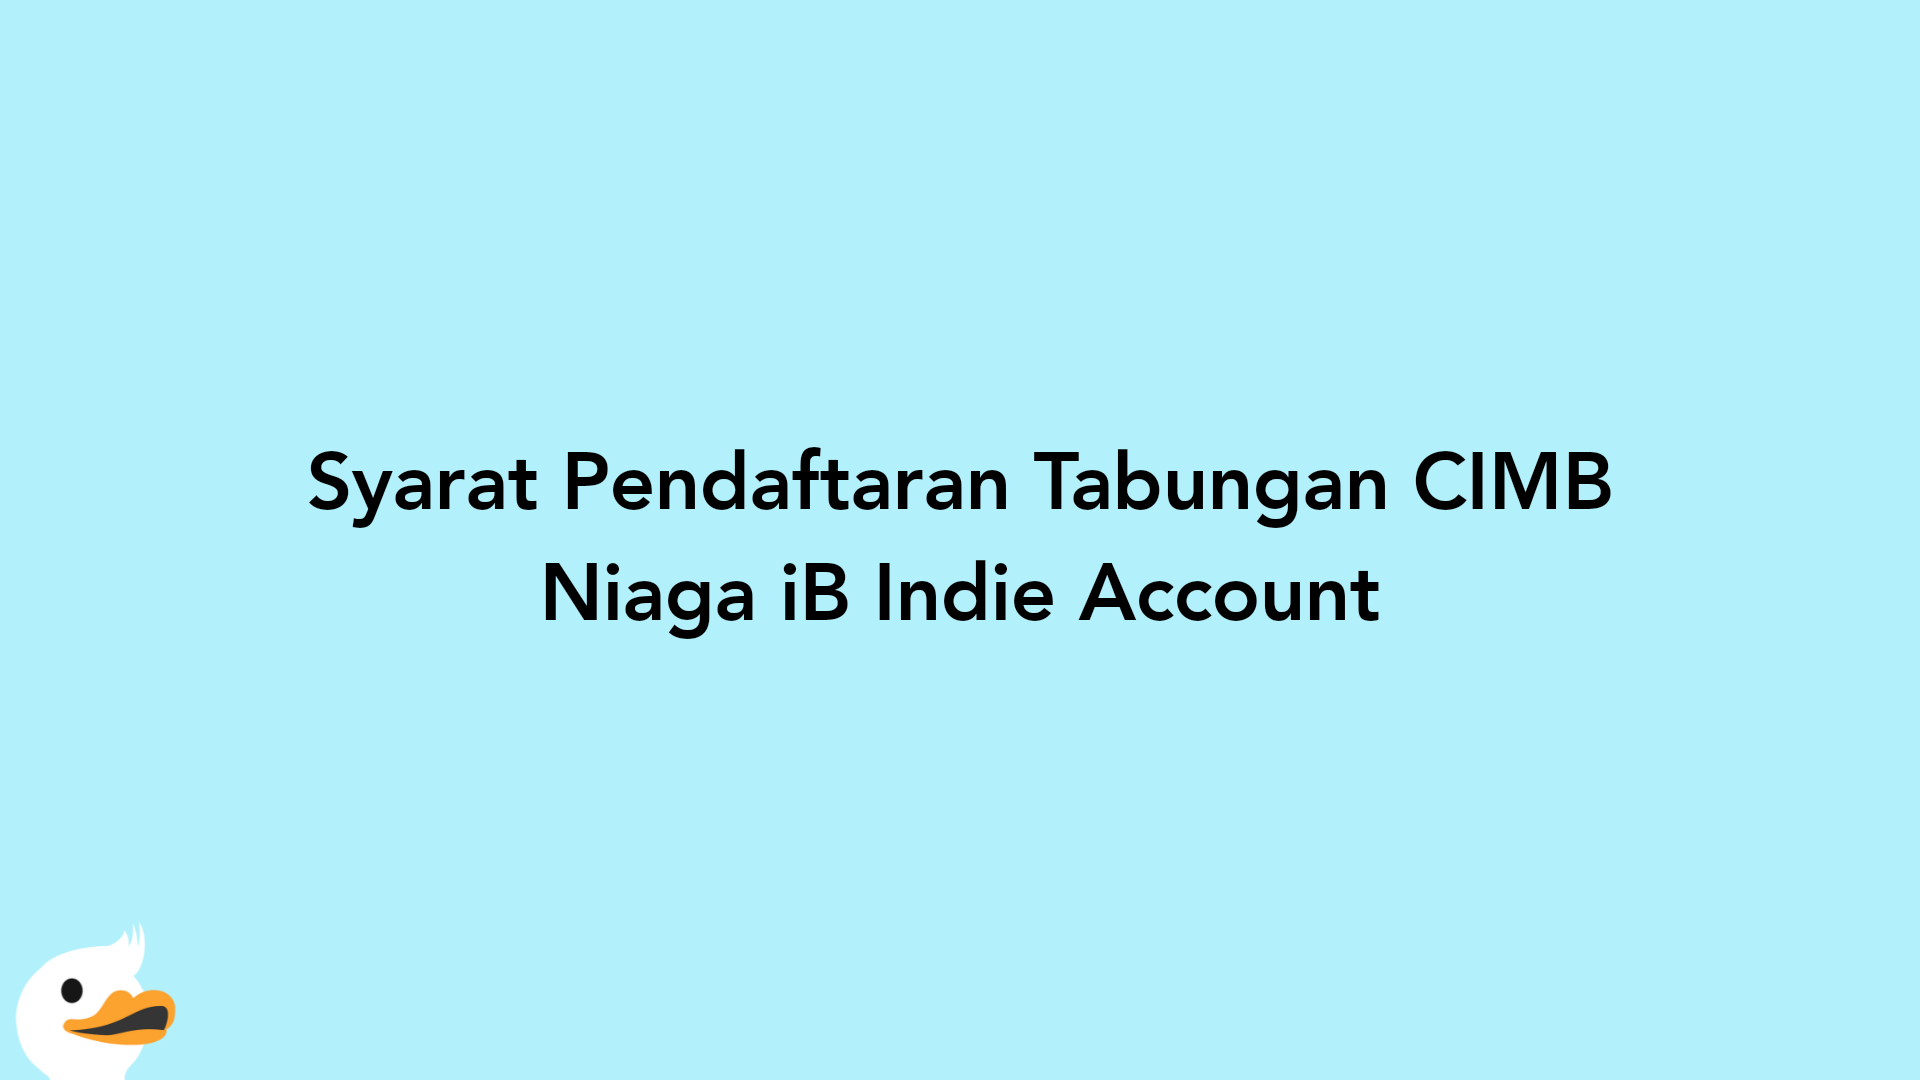 Syarat Pendaftaran Tabungan CIMB Niaga iB Indie Account